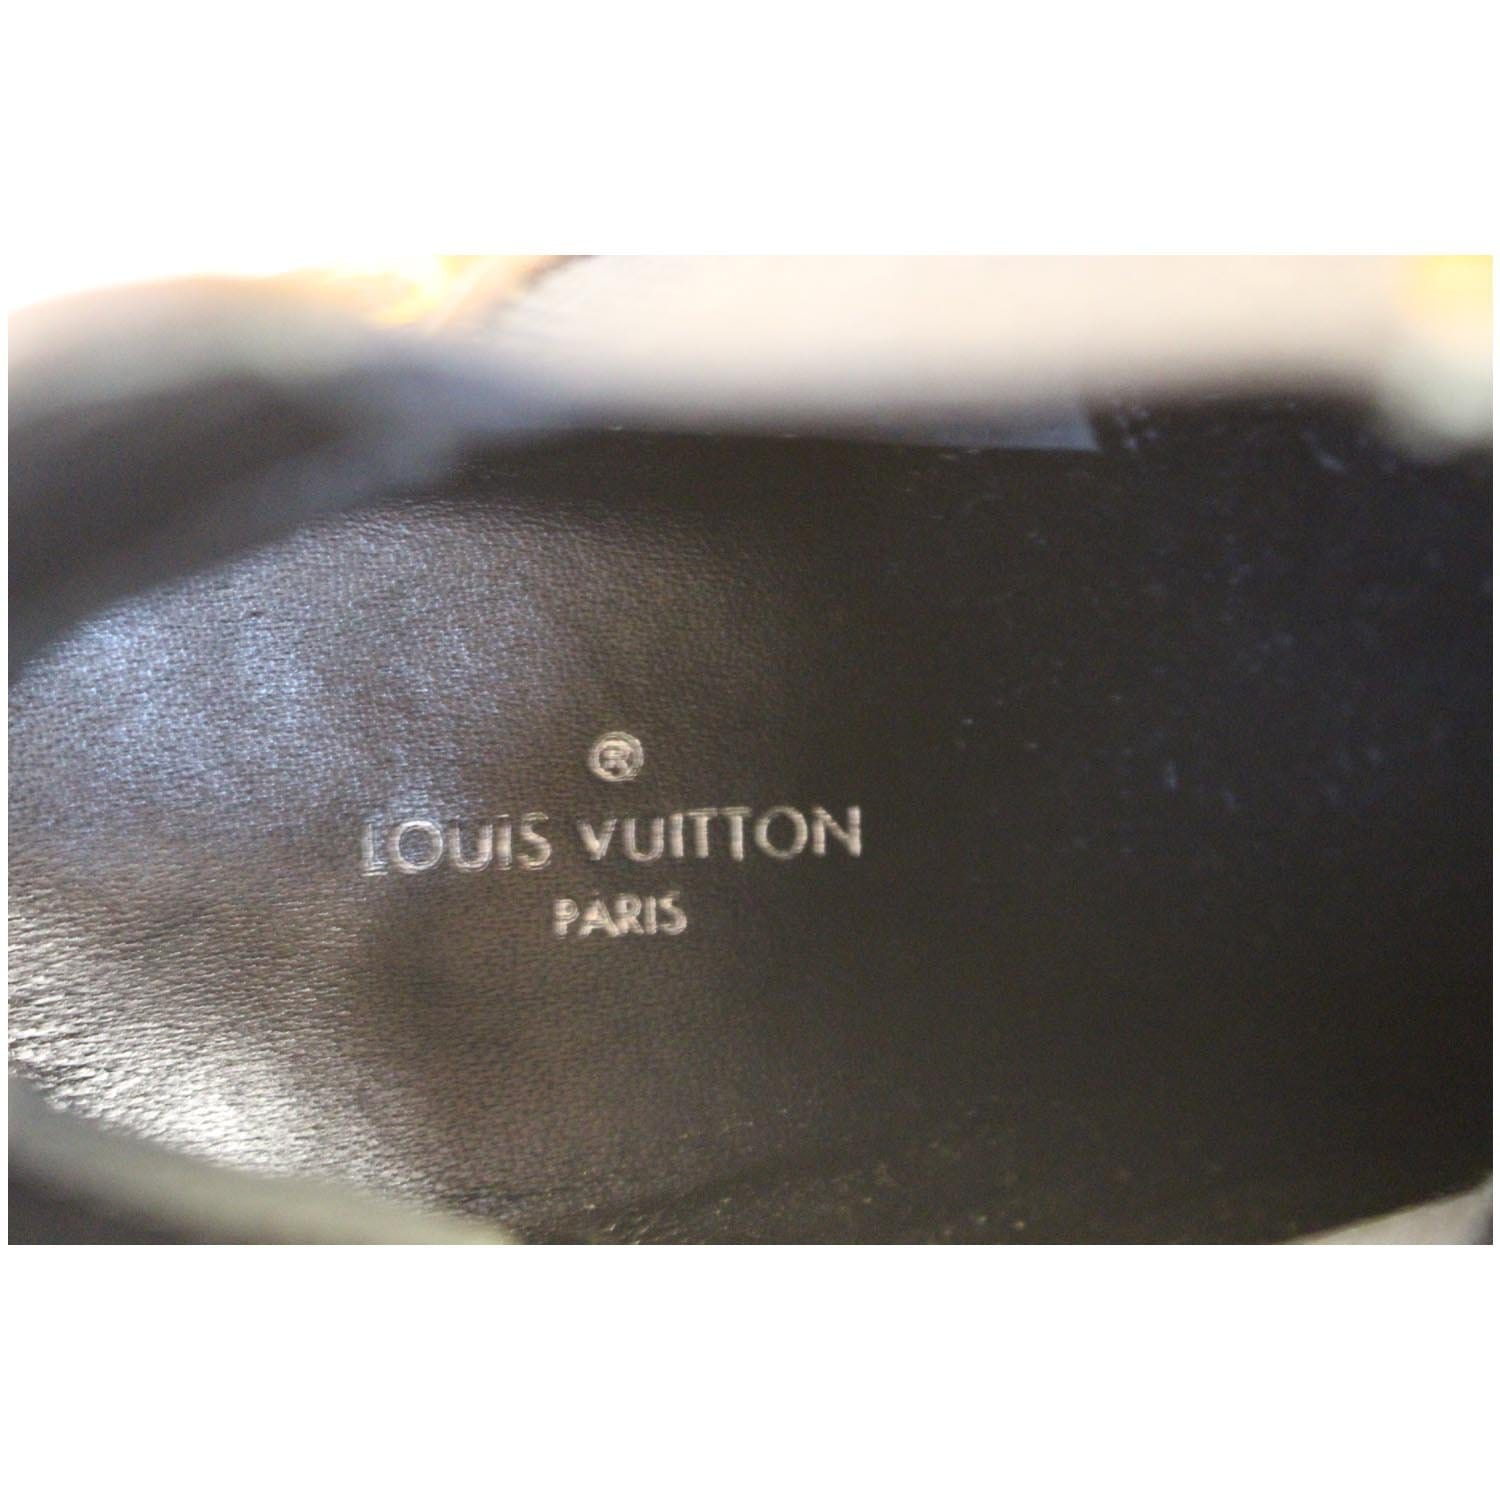 Louis Vuitton Boots - Alreem Brand